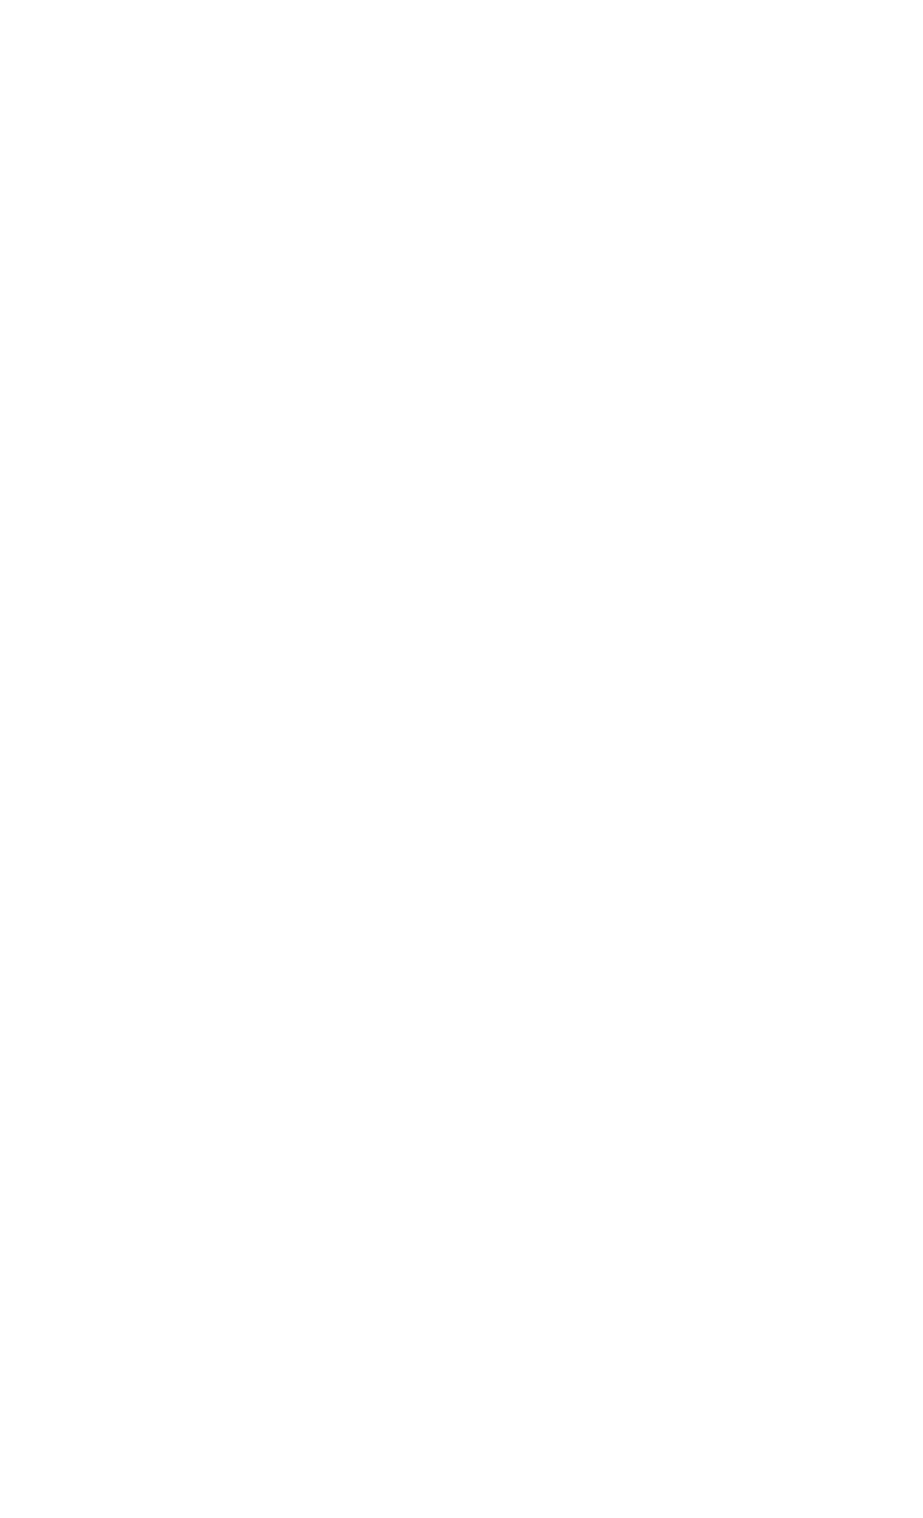 Kuwait Cement Company logo pour fonds sombres (PNG transparent)